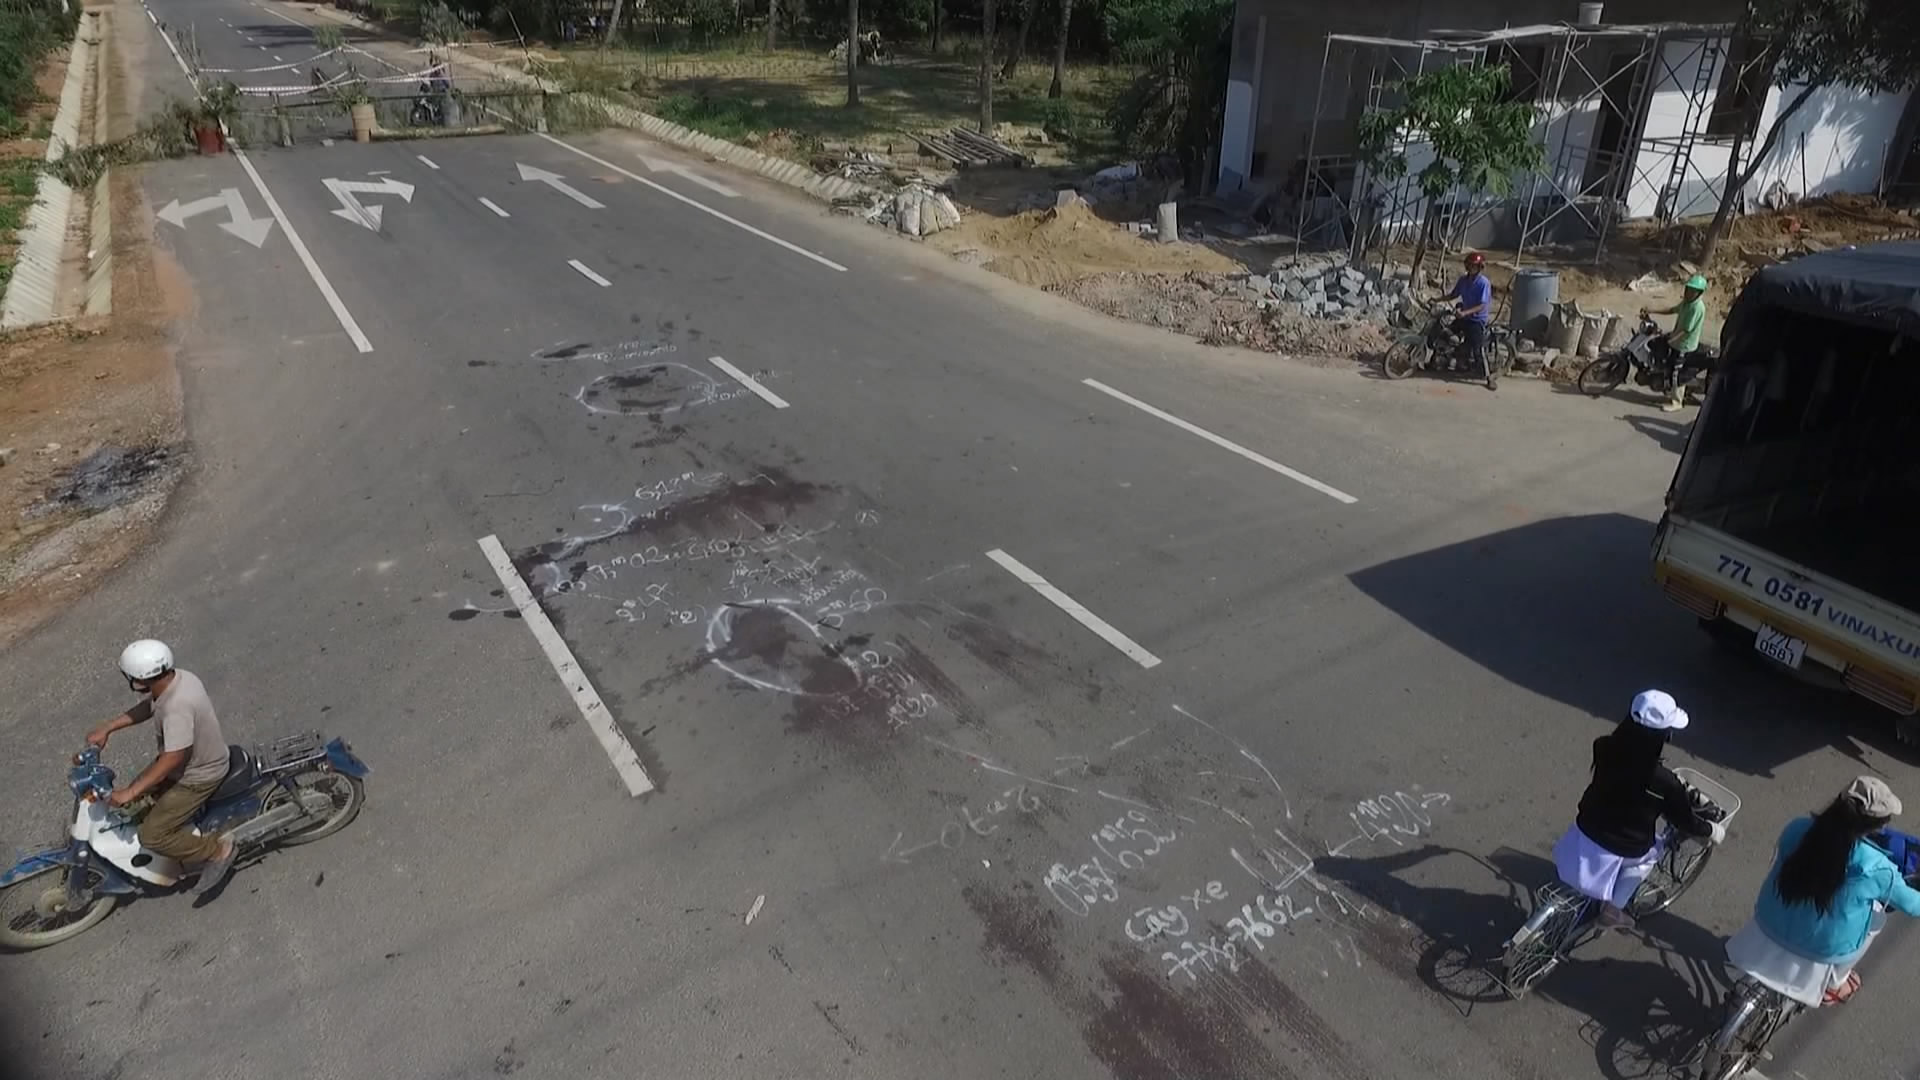 Ngã tư đường nơi xảy ra vụ tai nạn giao thông nghiêm trọng - ảnh: chụp từ clip